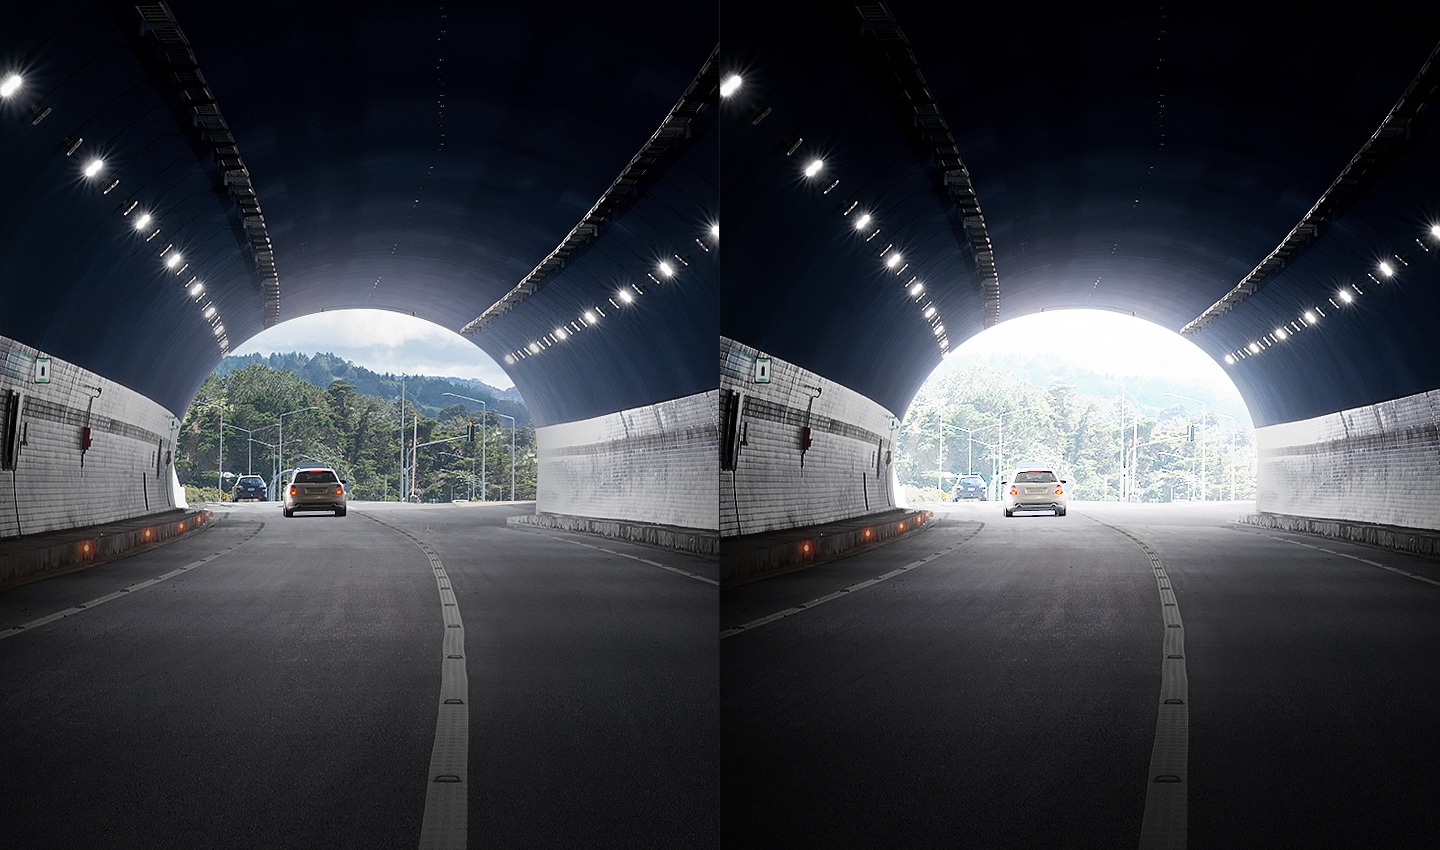 절반으로 나뉘어 비교되는 이미지입니다. 왼쪽은 터널 밖이 선명하게 보이고 오른쪽은 터널 밖이 흐릿합니다.